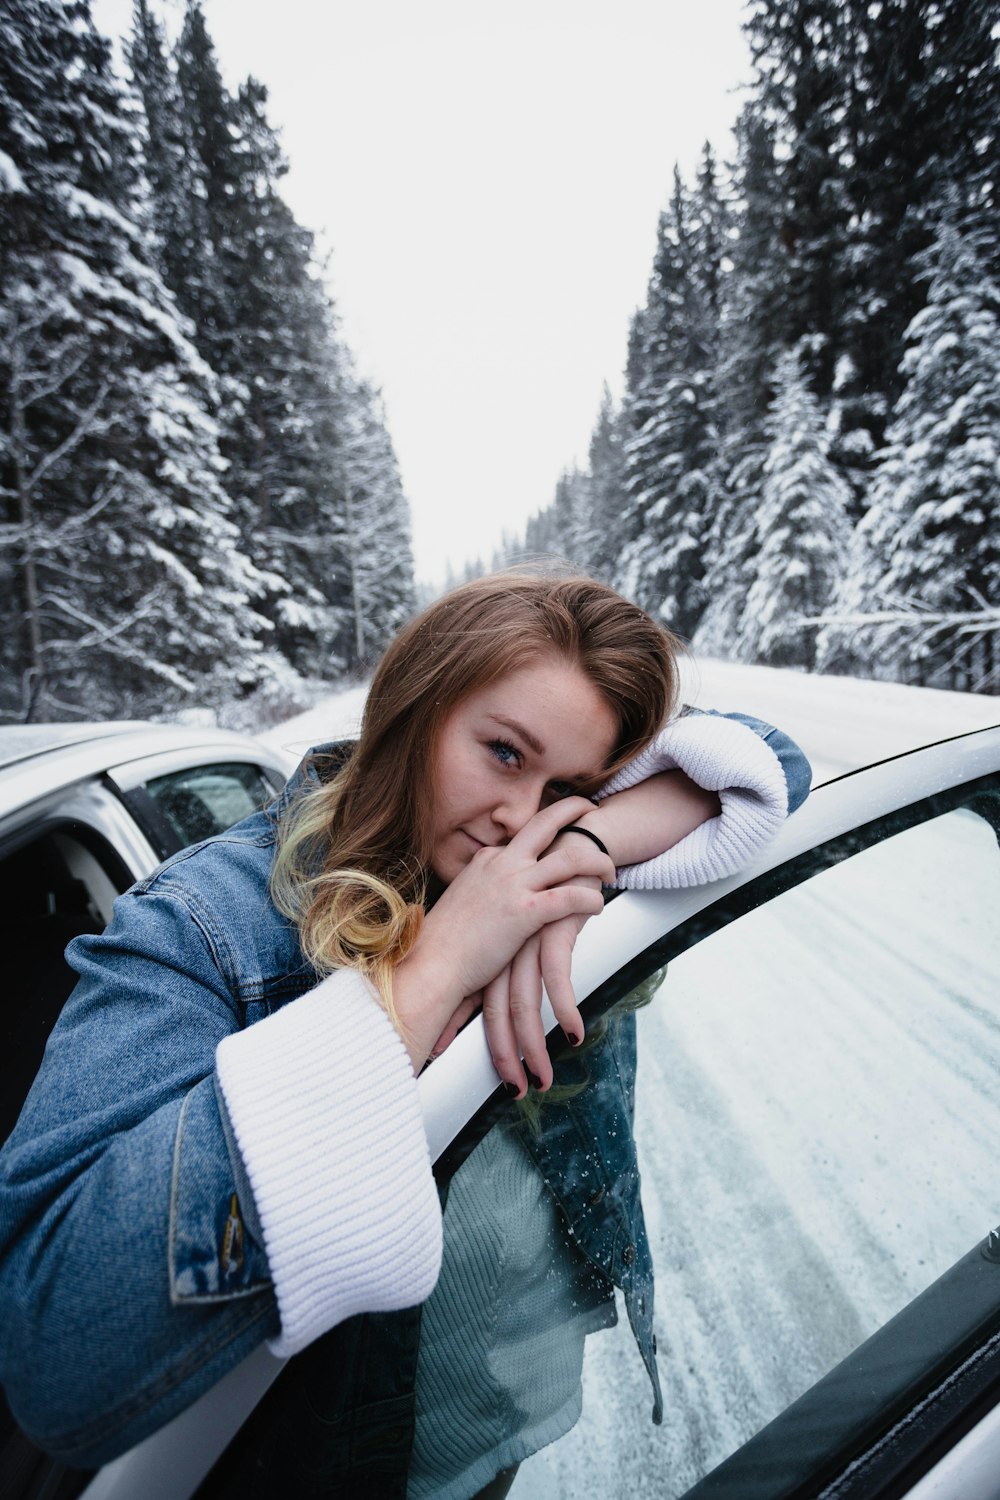 Frau in blauen Jeans lehnt sich an weiße Fahrzeugtür auf der Straße neben Kiefern, die im Winter mit Schnee bedeckt sind